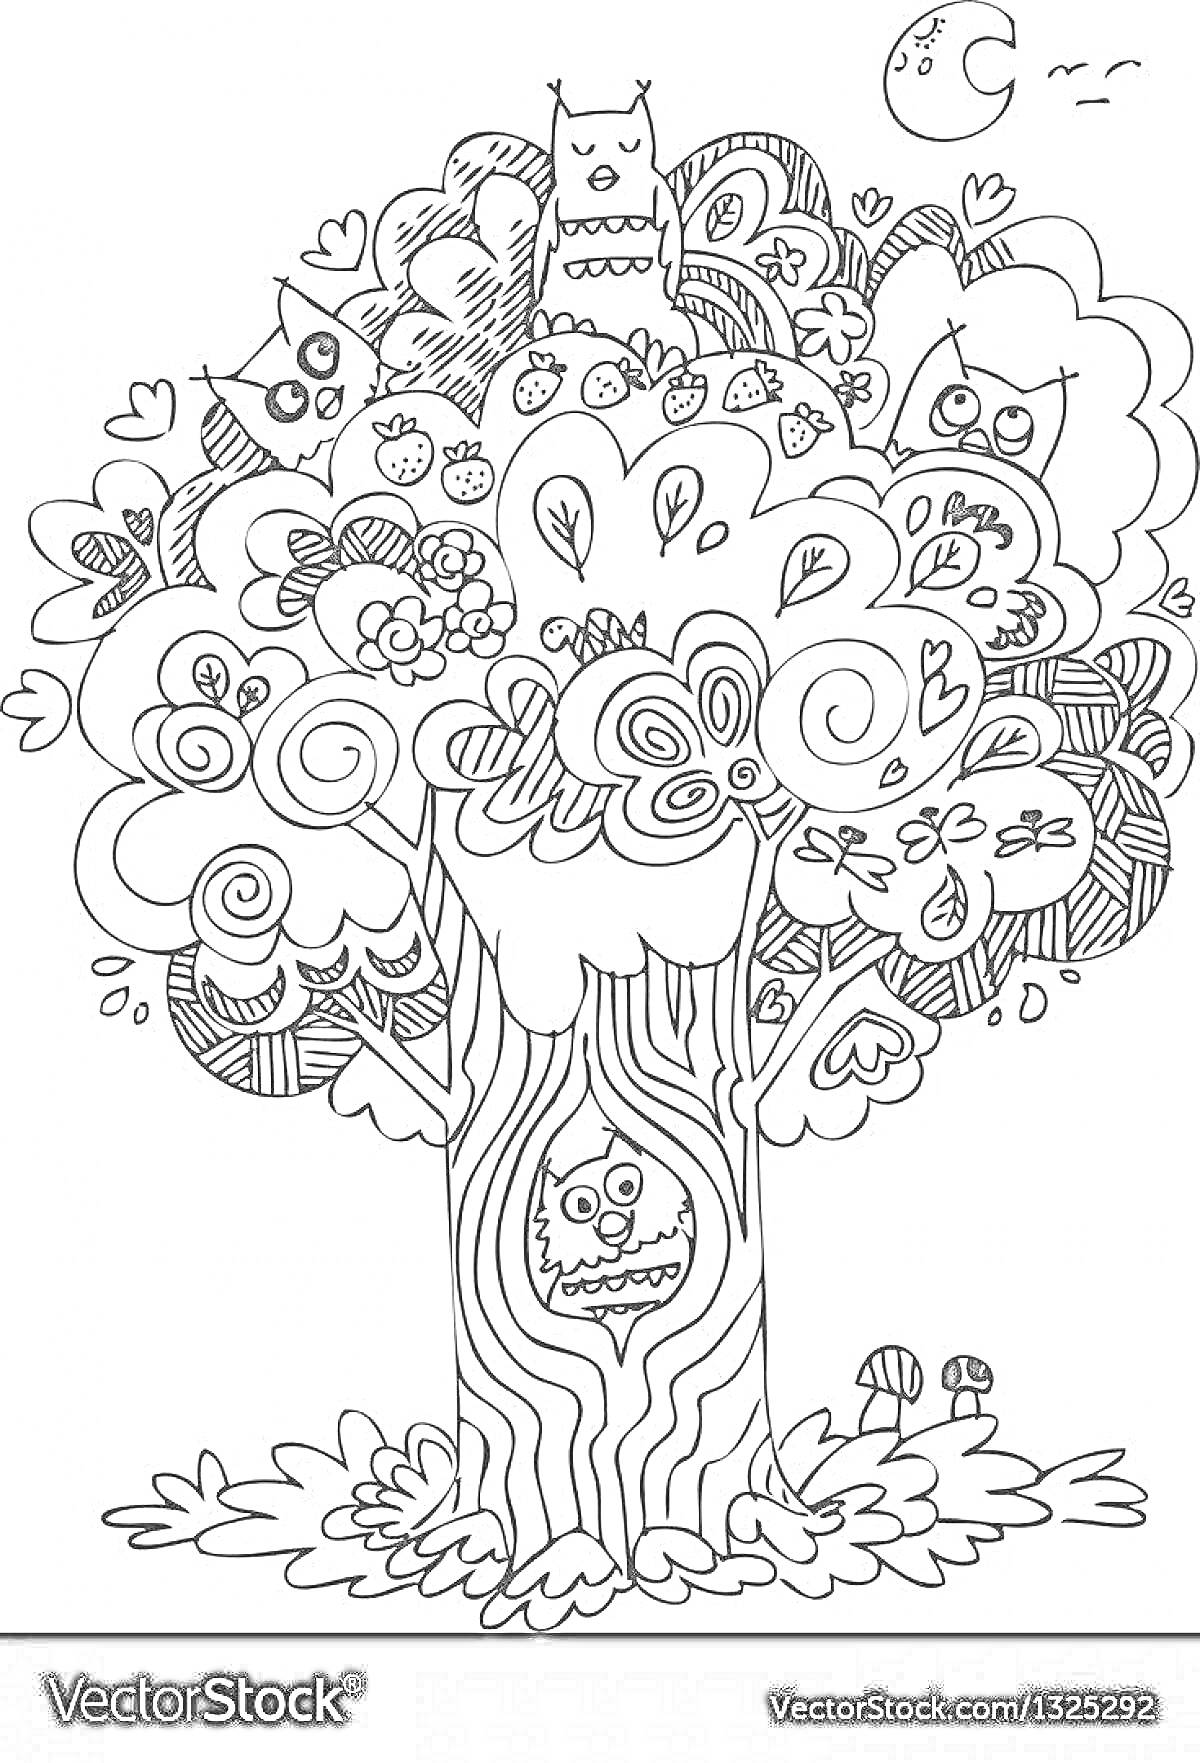 На раскраске изображено: Цветы, Грибы, Месяц, Звезды, Природа, Чудо дерево, Корней Чуковский